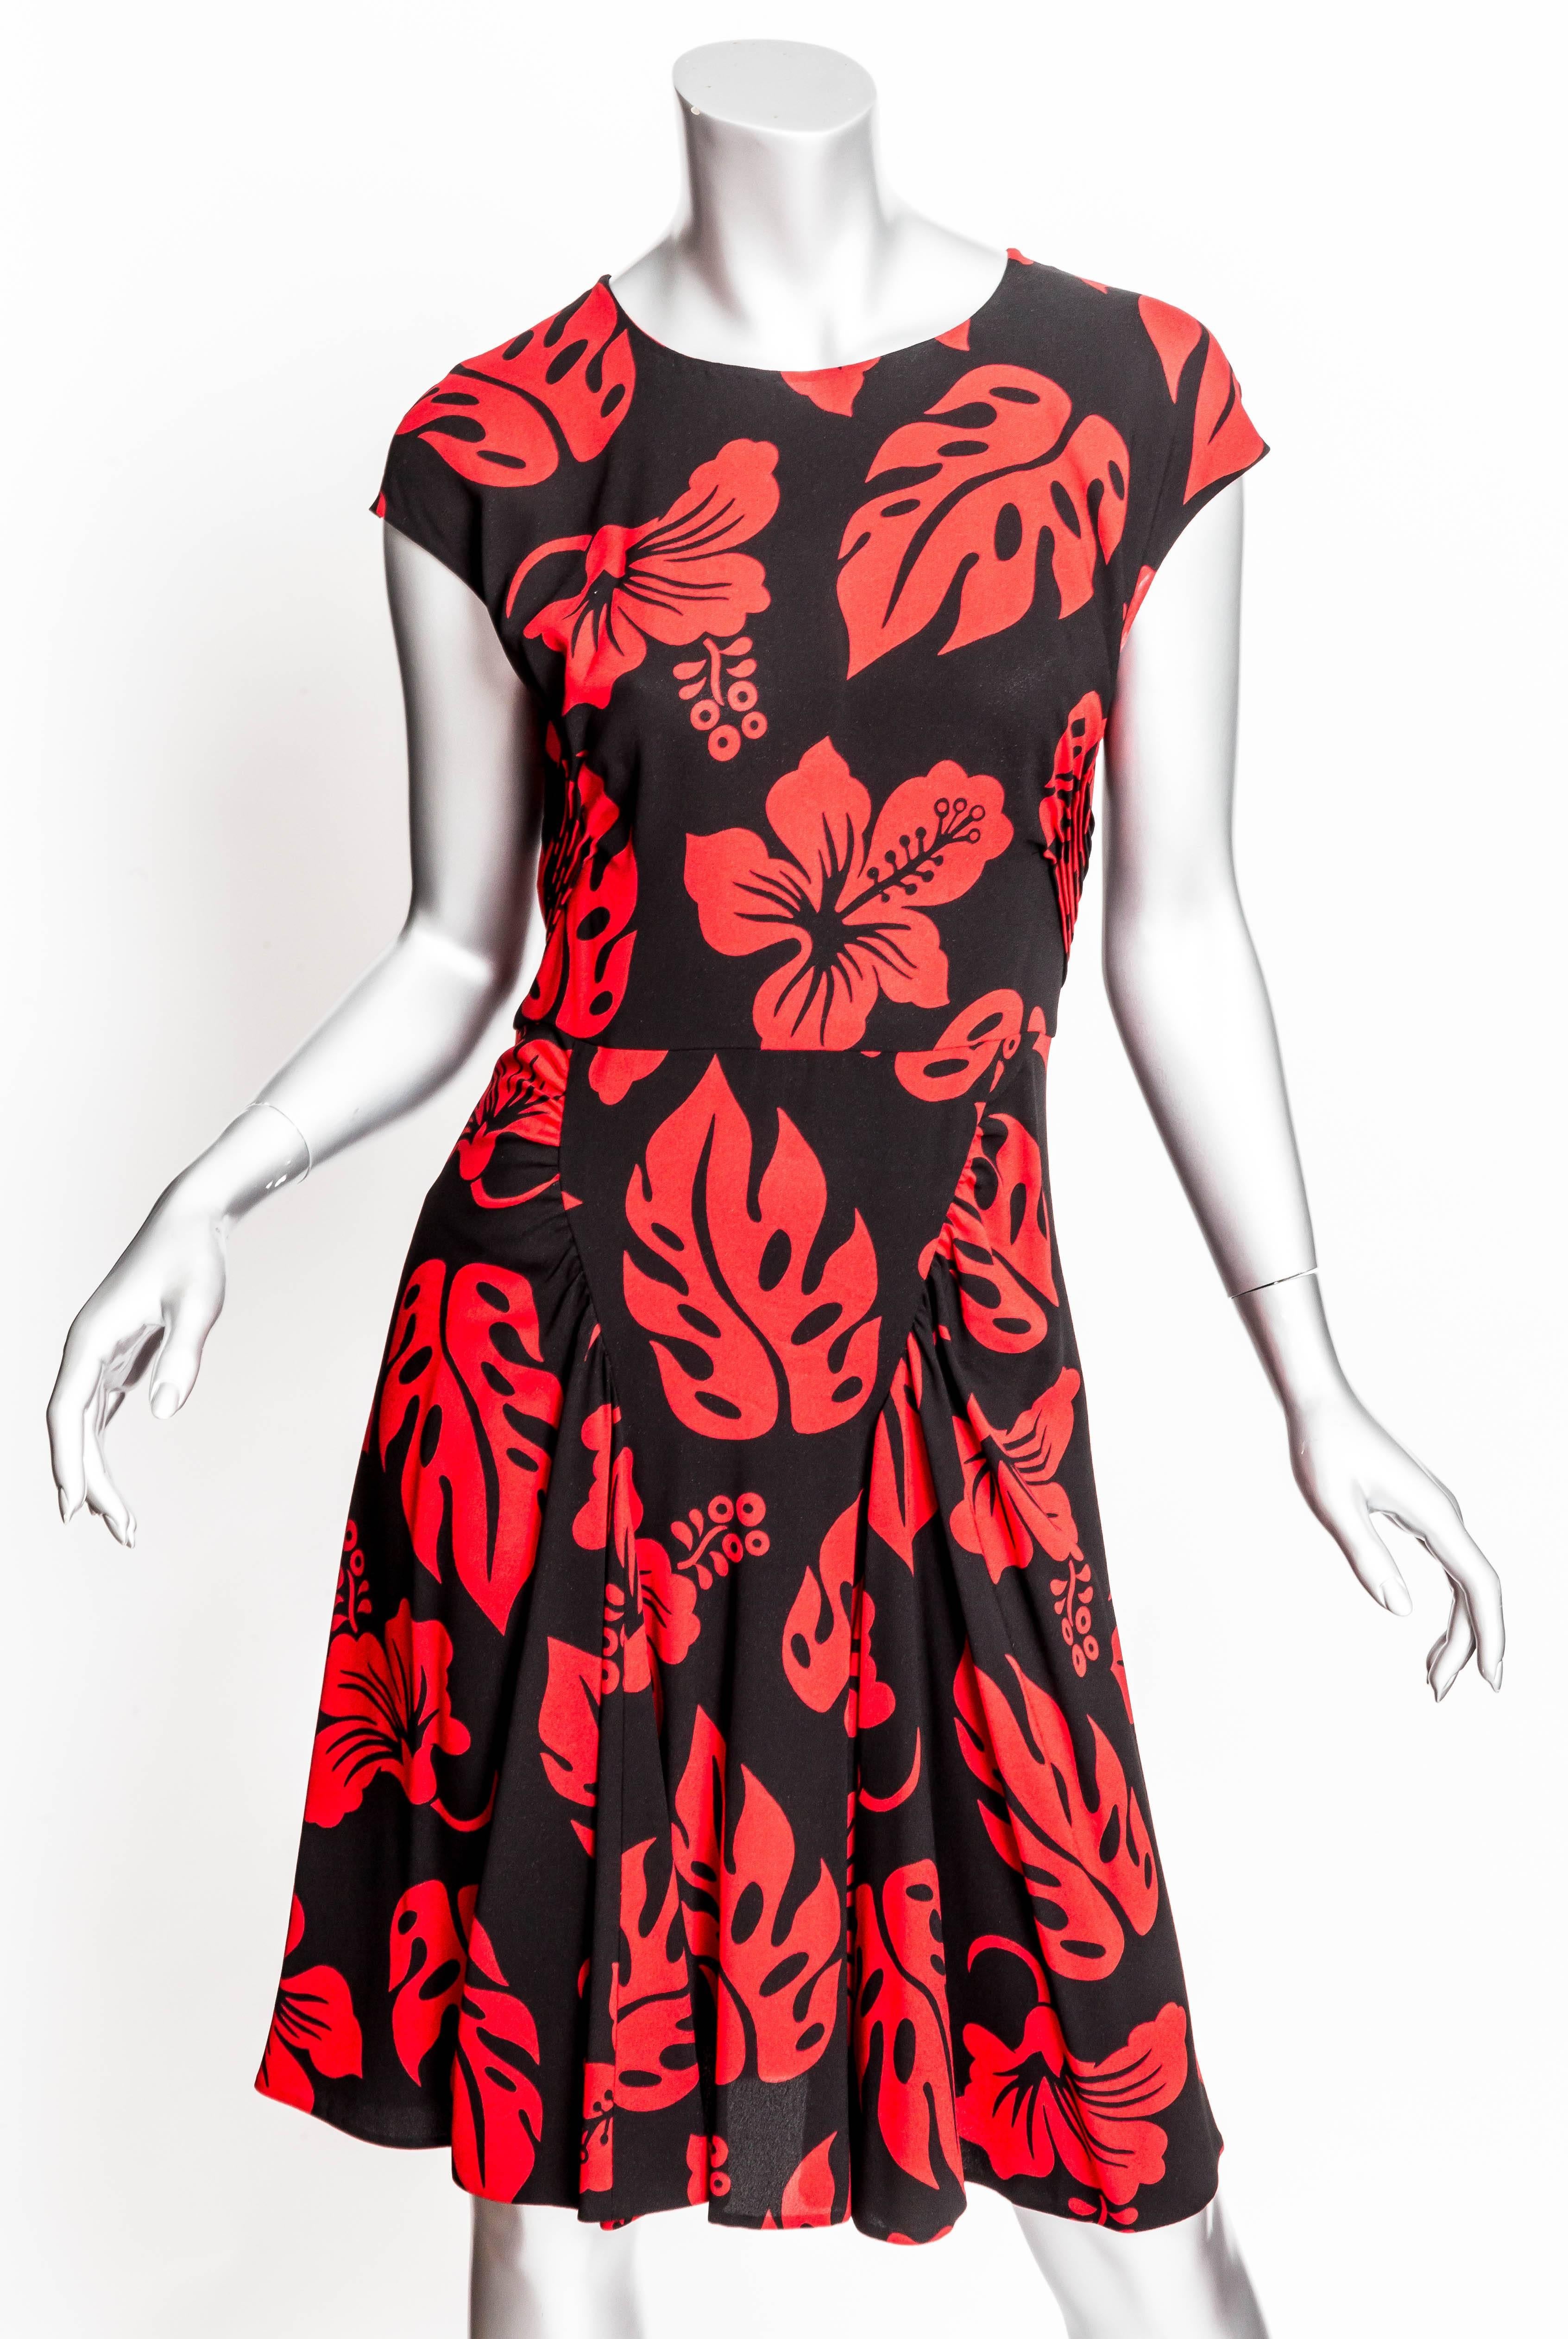 Prada Red and Black Print Dress - 44 4